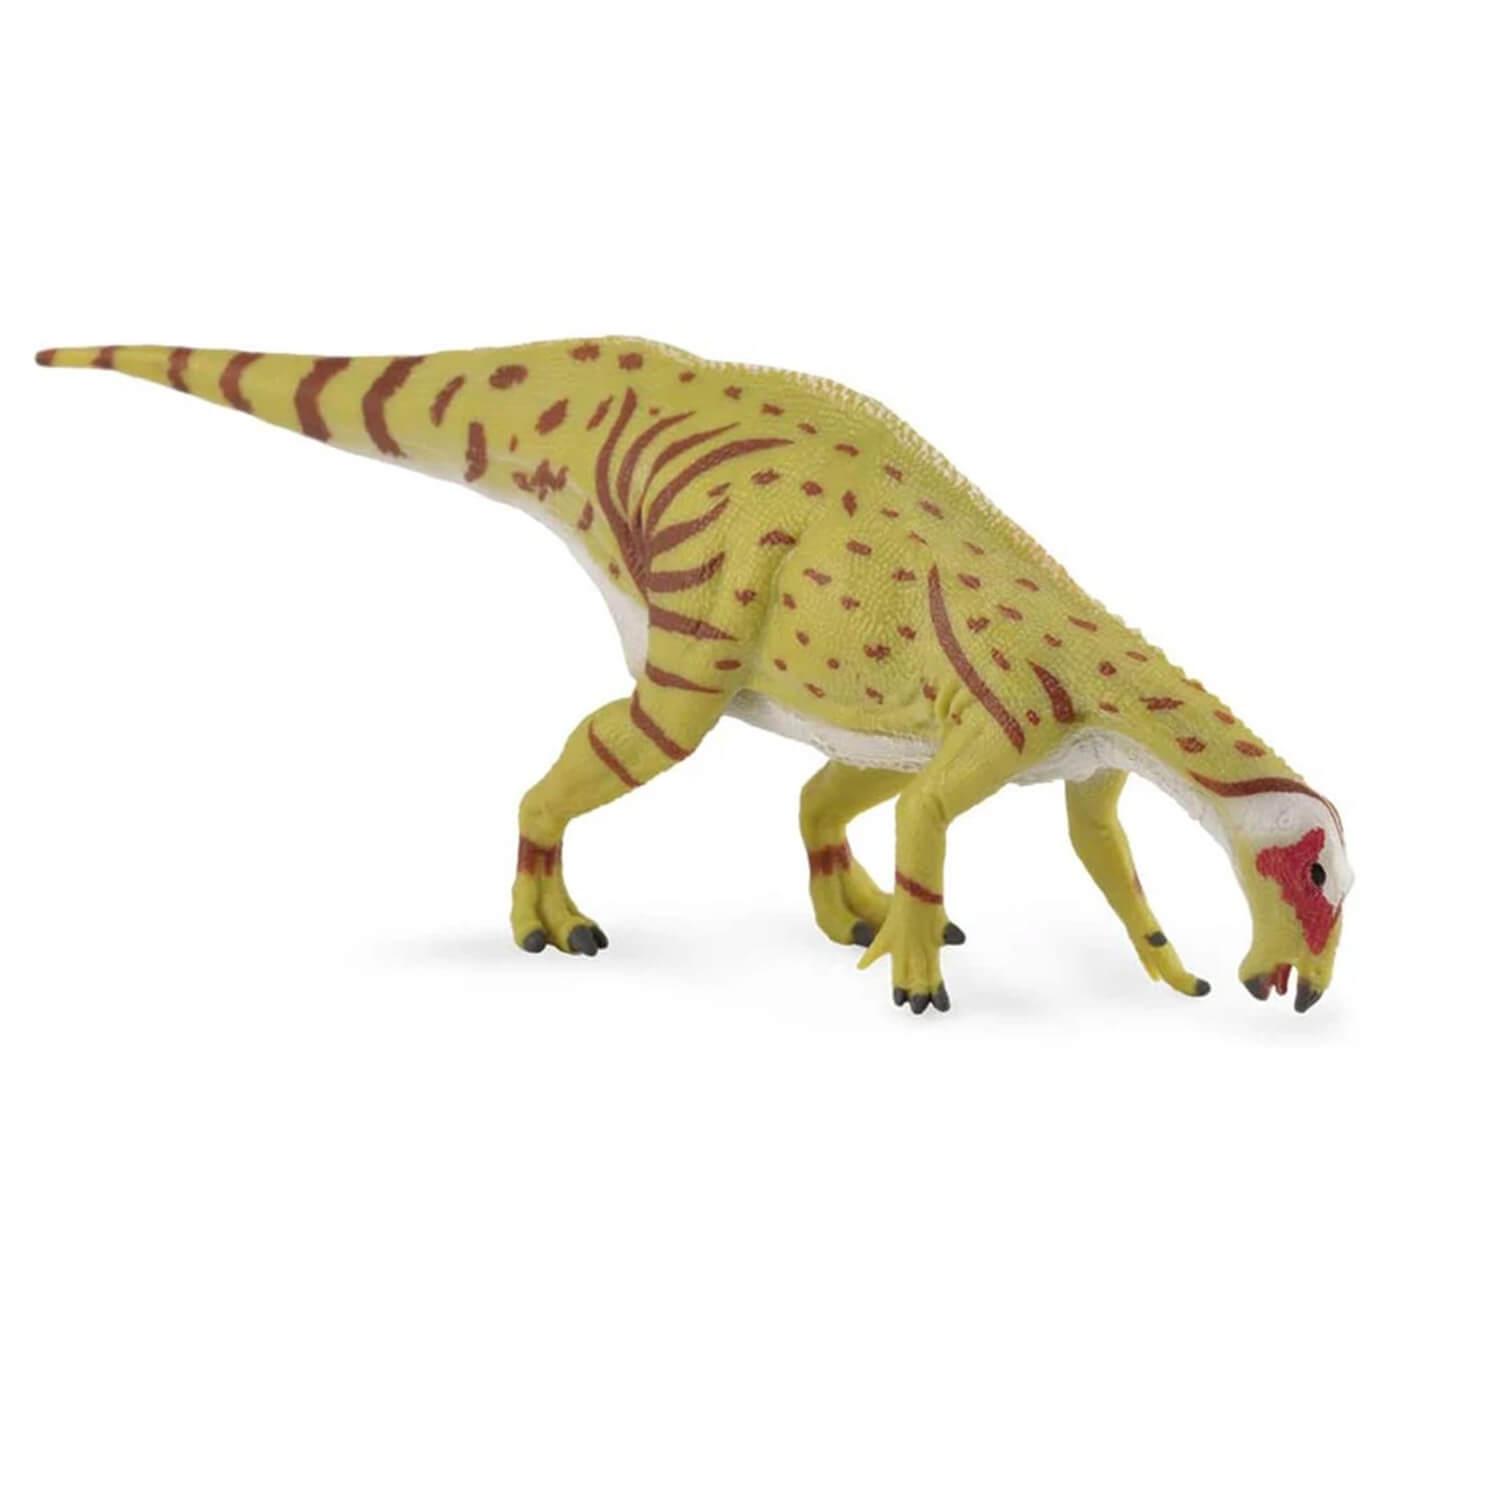 figurineâ prã©histoire (m):â mantellisaurus